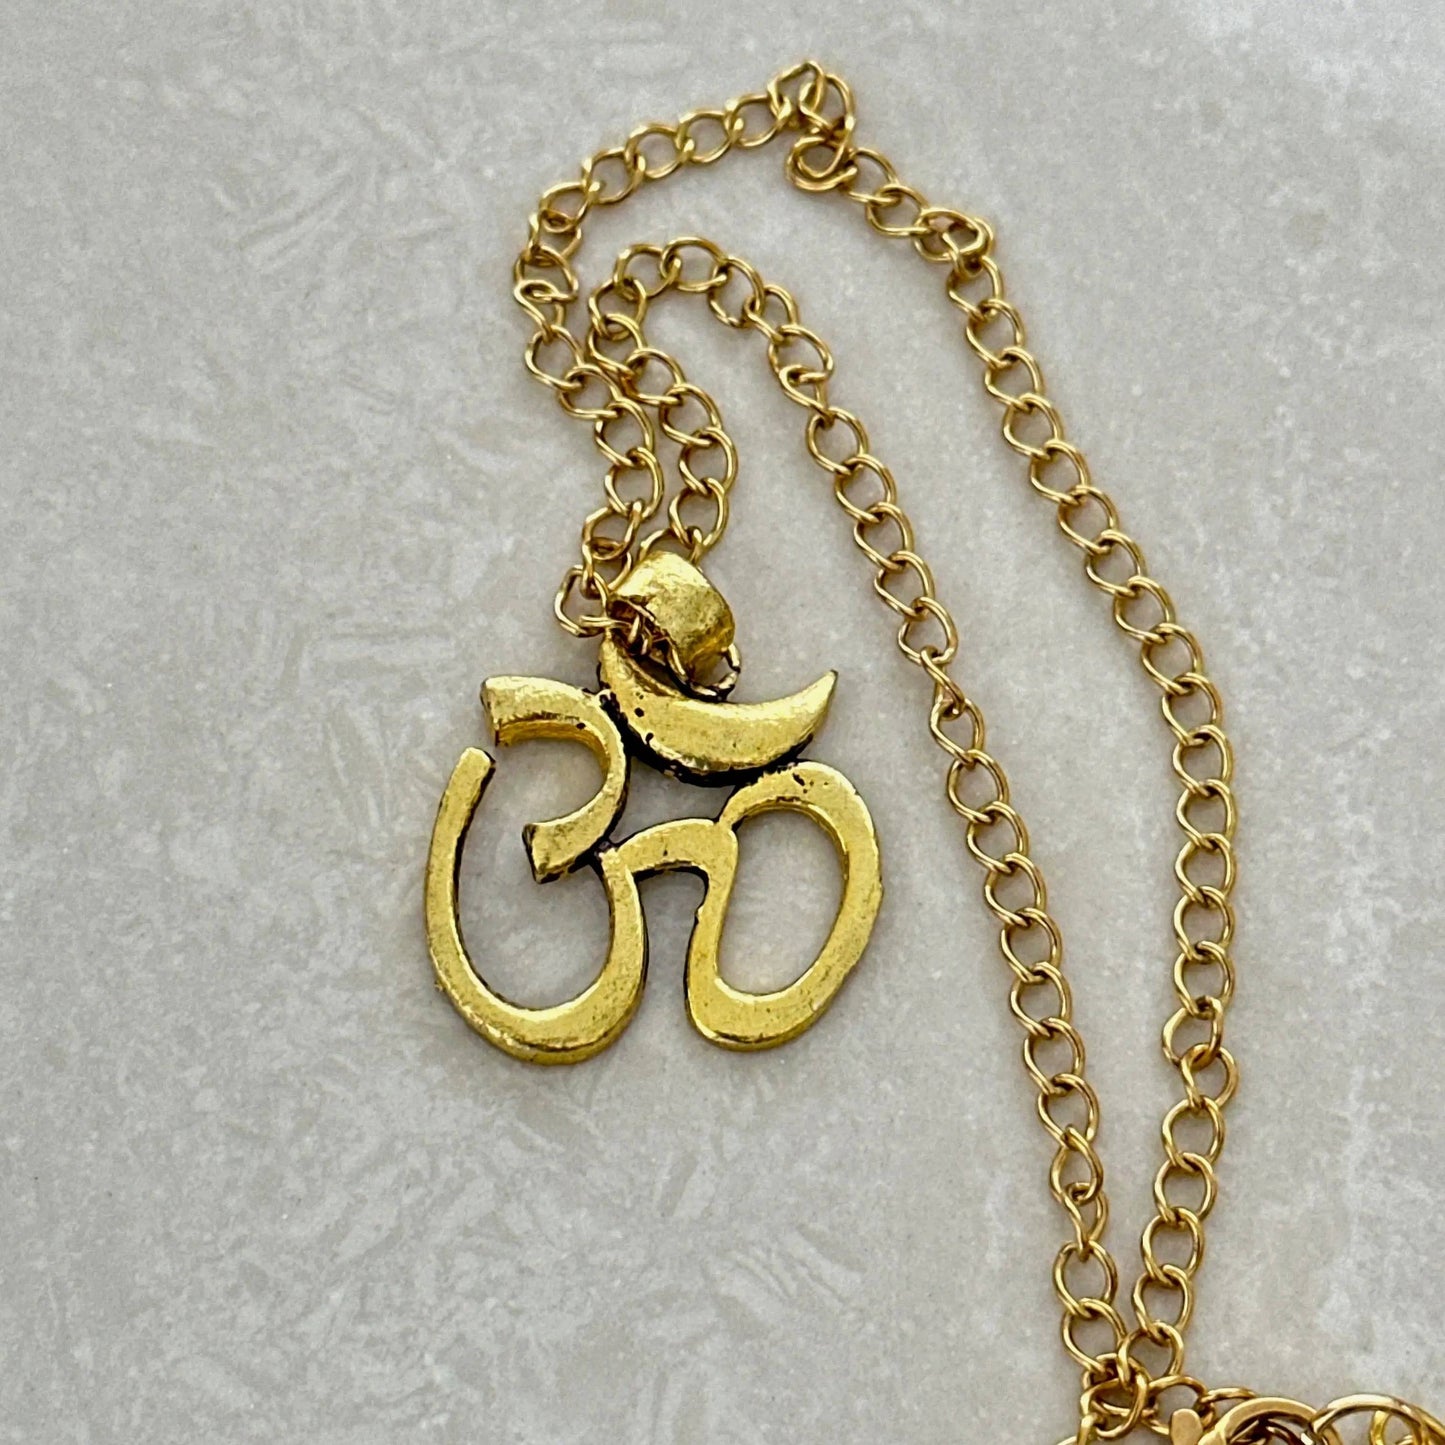 OM Yoga 'Meditation & Tranquility' Pendant Necklace - Uplift Beads